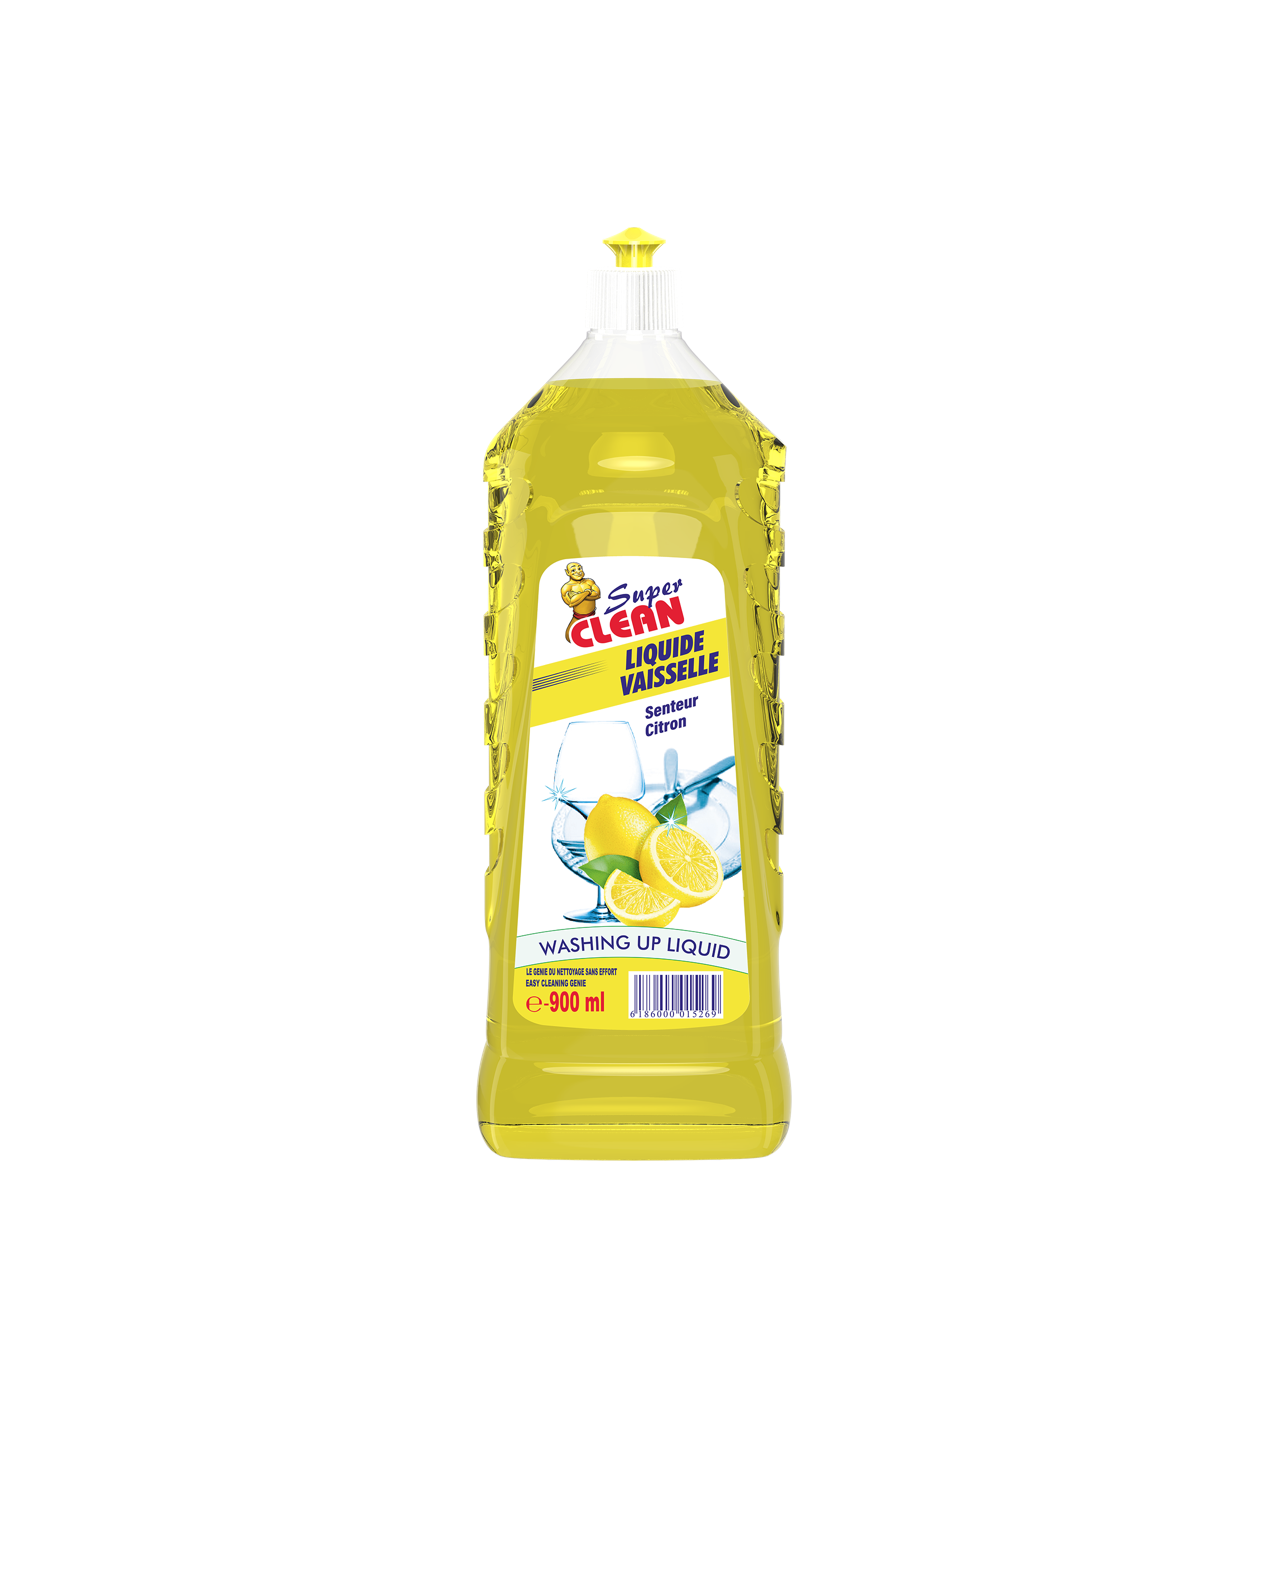 SUPER CLEAN_Liquide Vaisselle Fraise 450ml_Siprochim